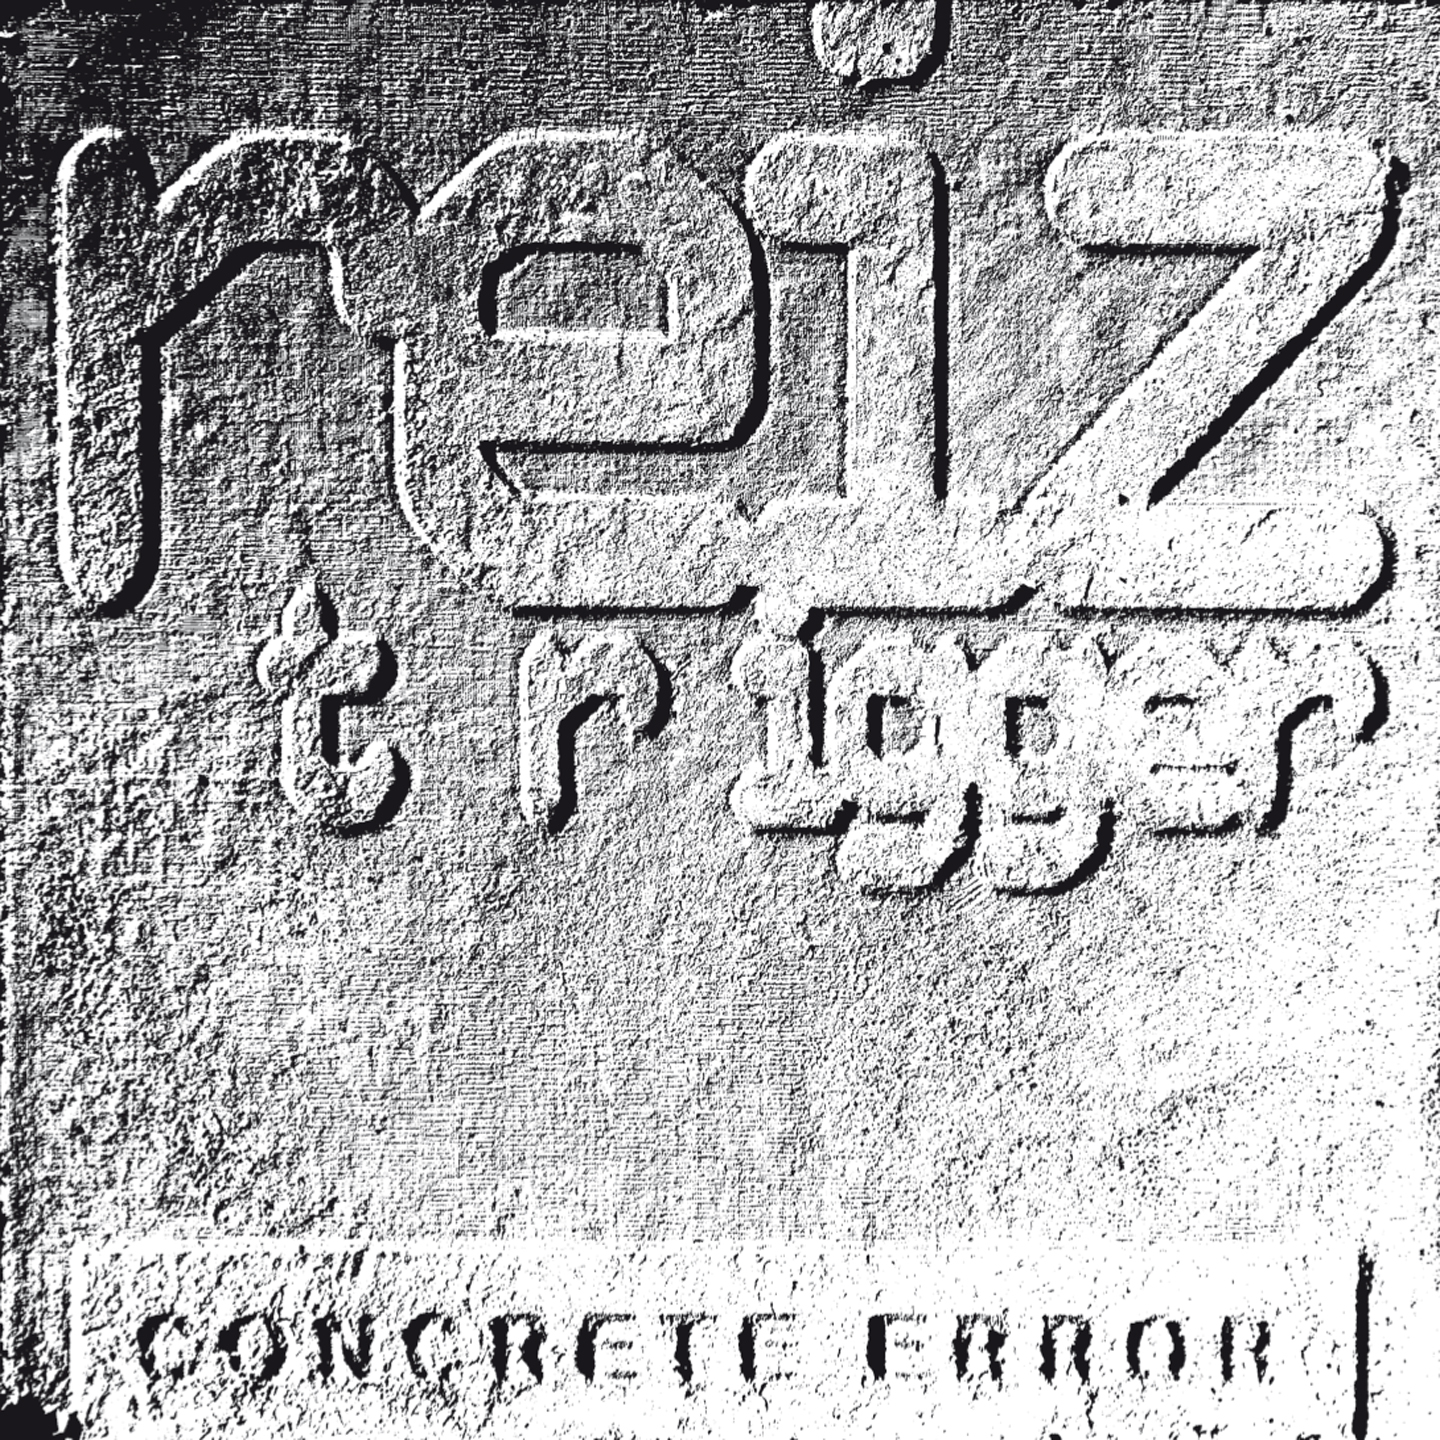 CD Reiz Trigger: "Concrete Error" (Light Edition)